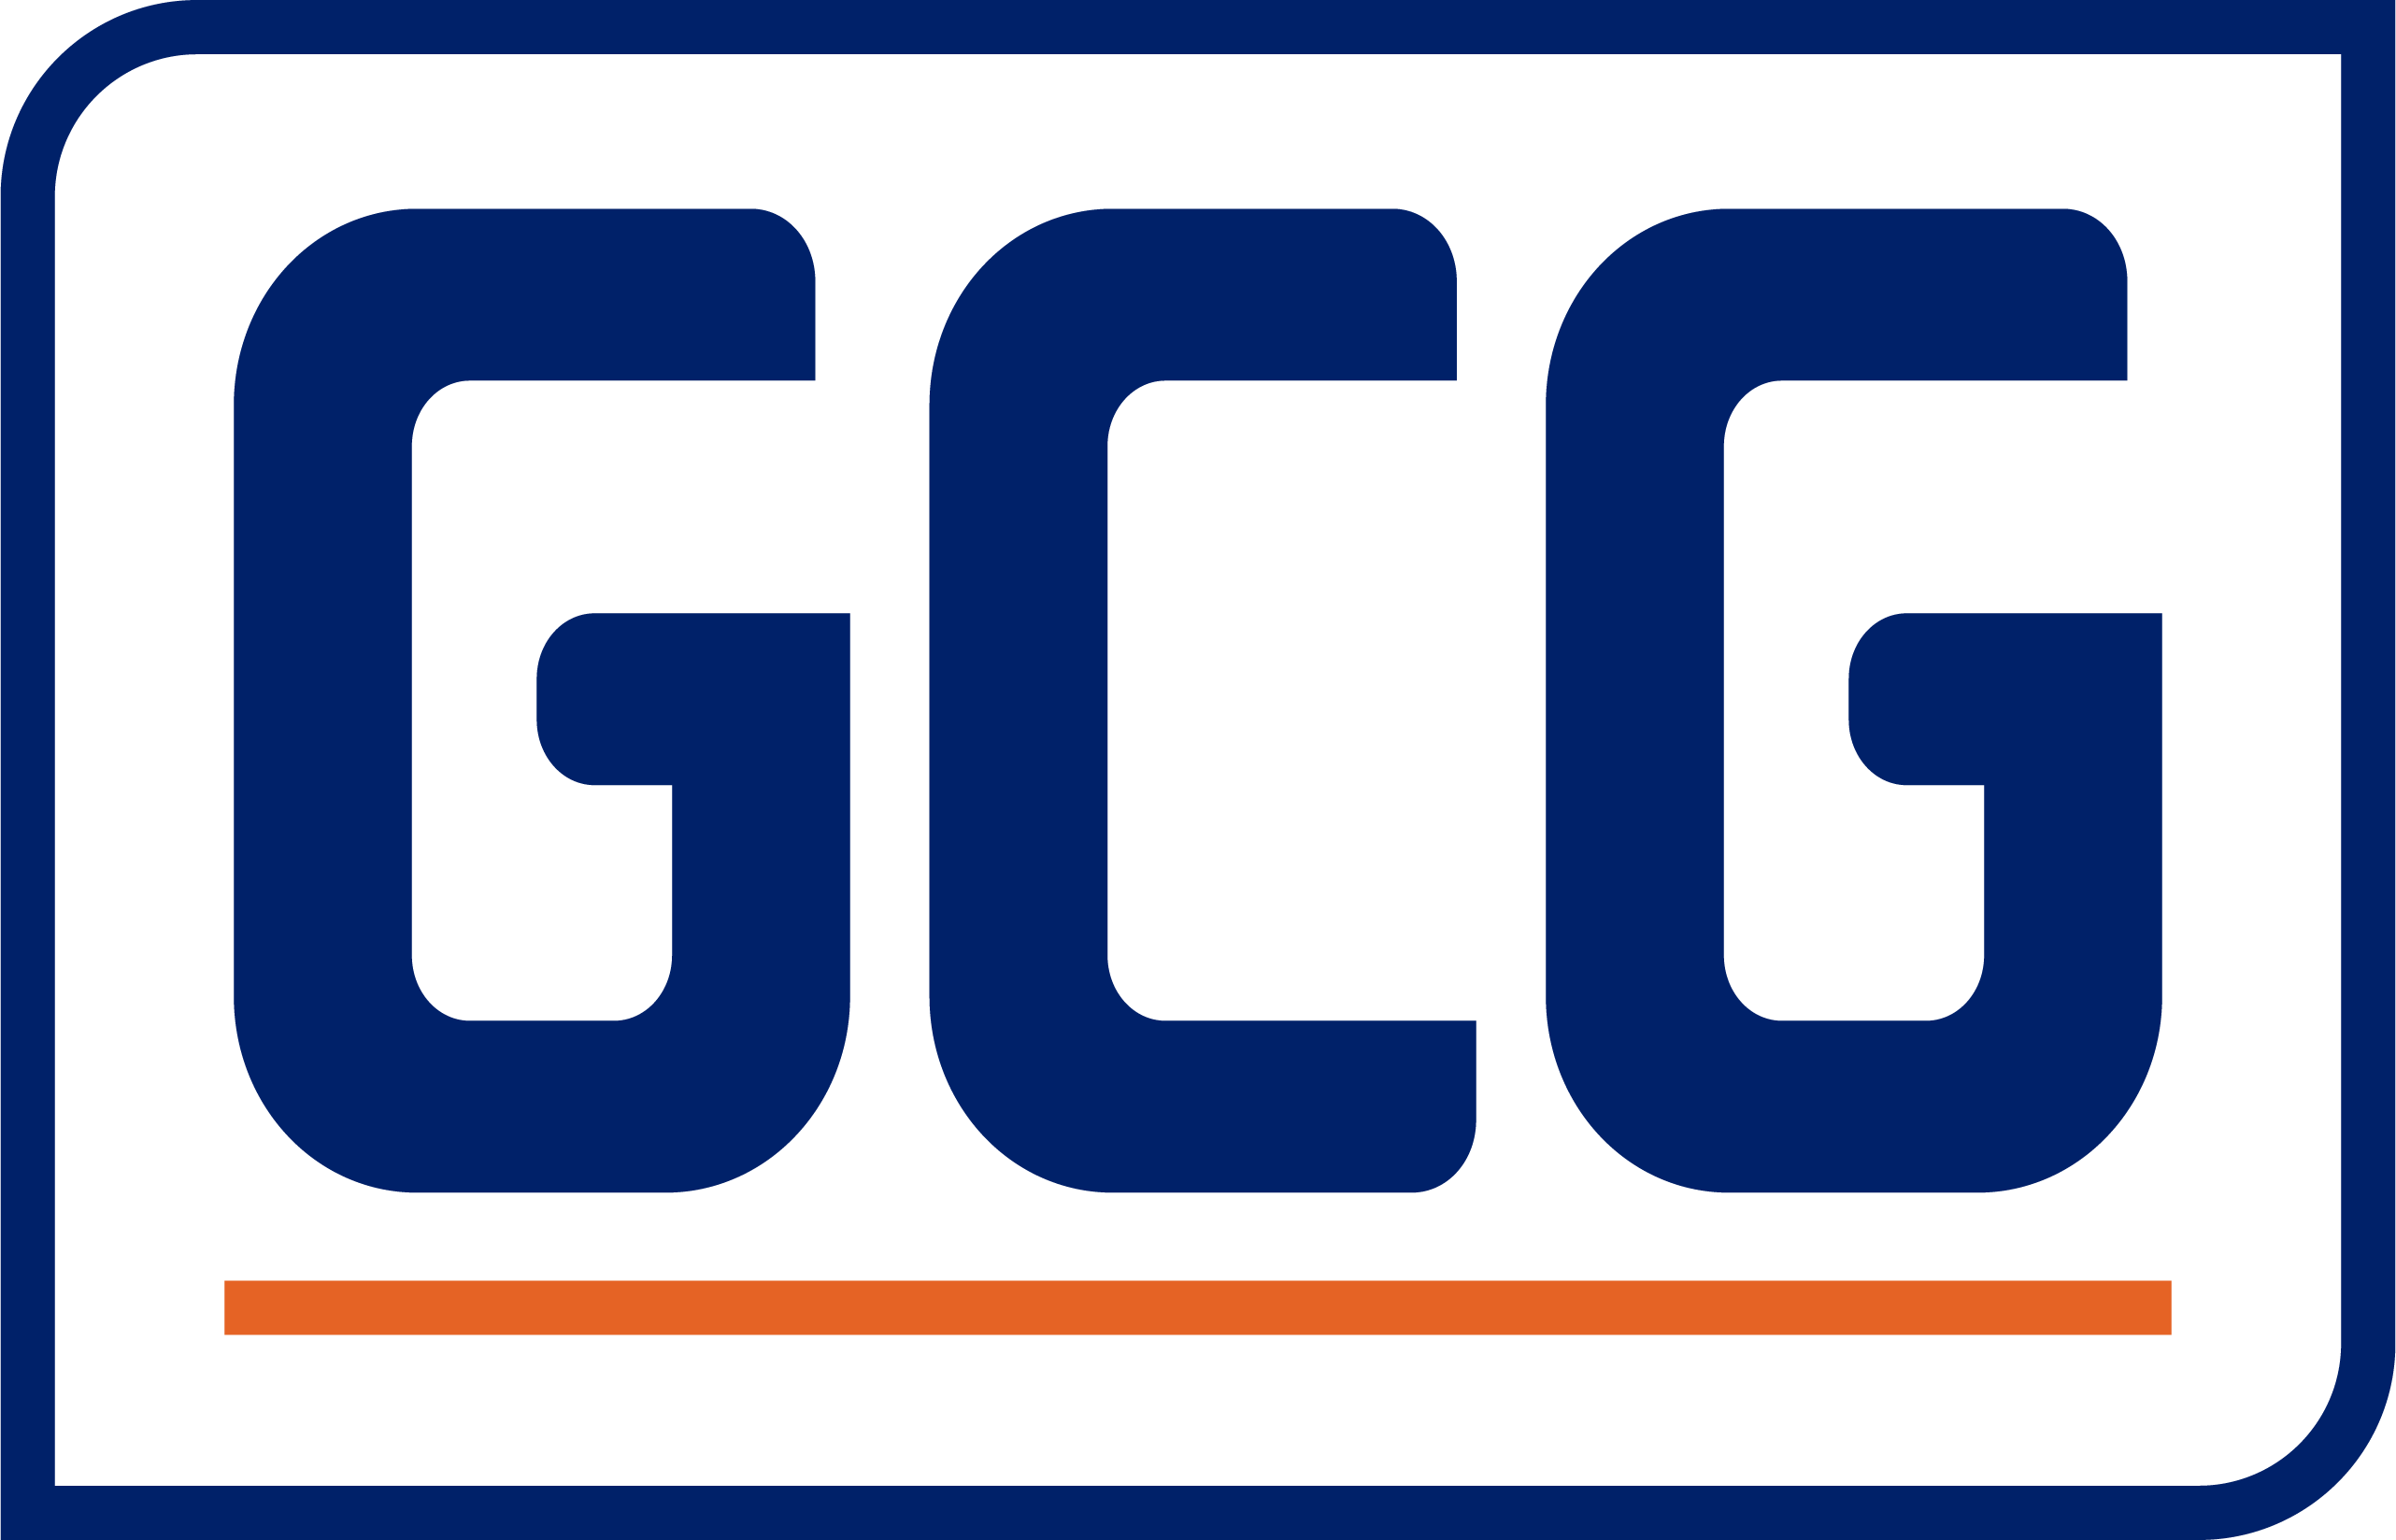 gcg-logo-color-digital